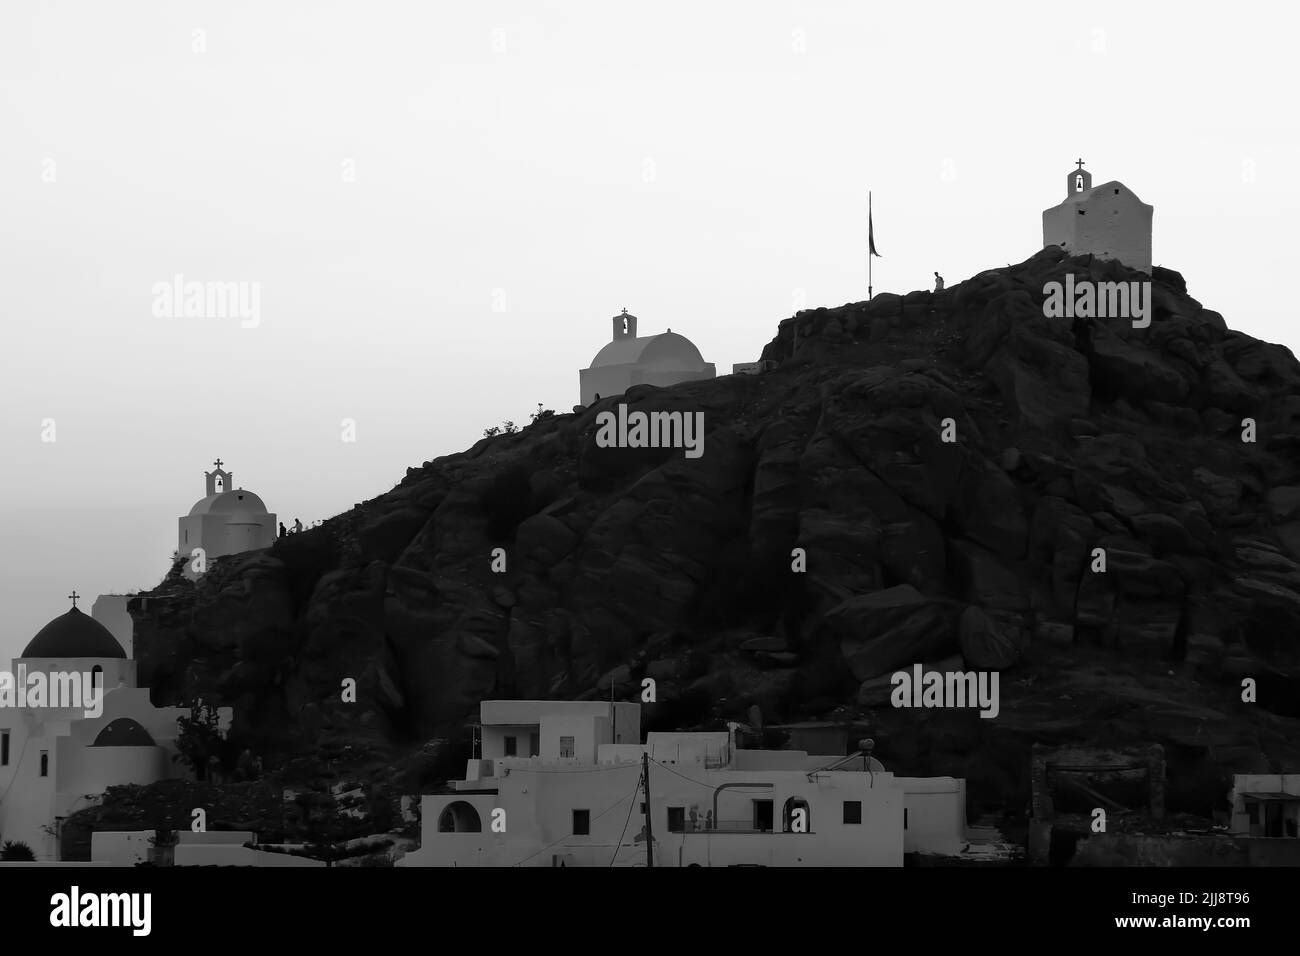 Les touristes explorant les petites chapelles pittoresques en haut de la colline sur l'île magnifique d'iOS Grèce tandis que le soleil se couche en noir et blanc Banque D'Images